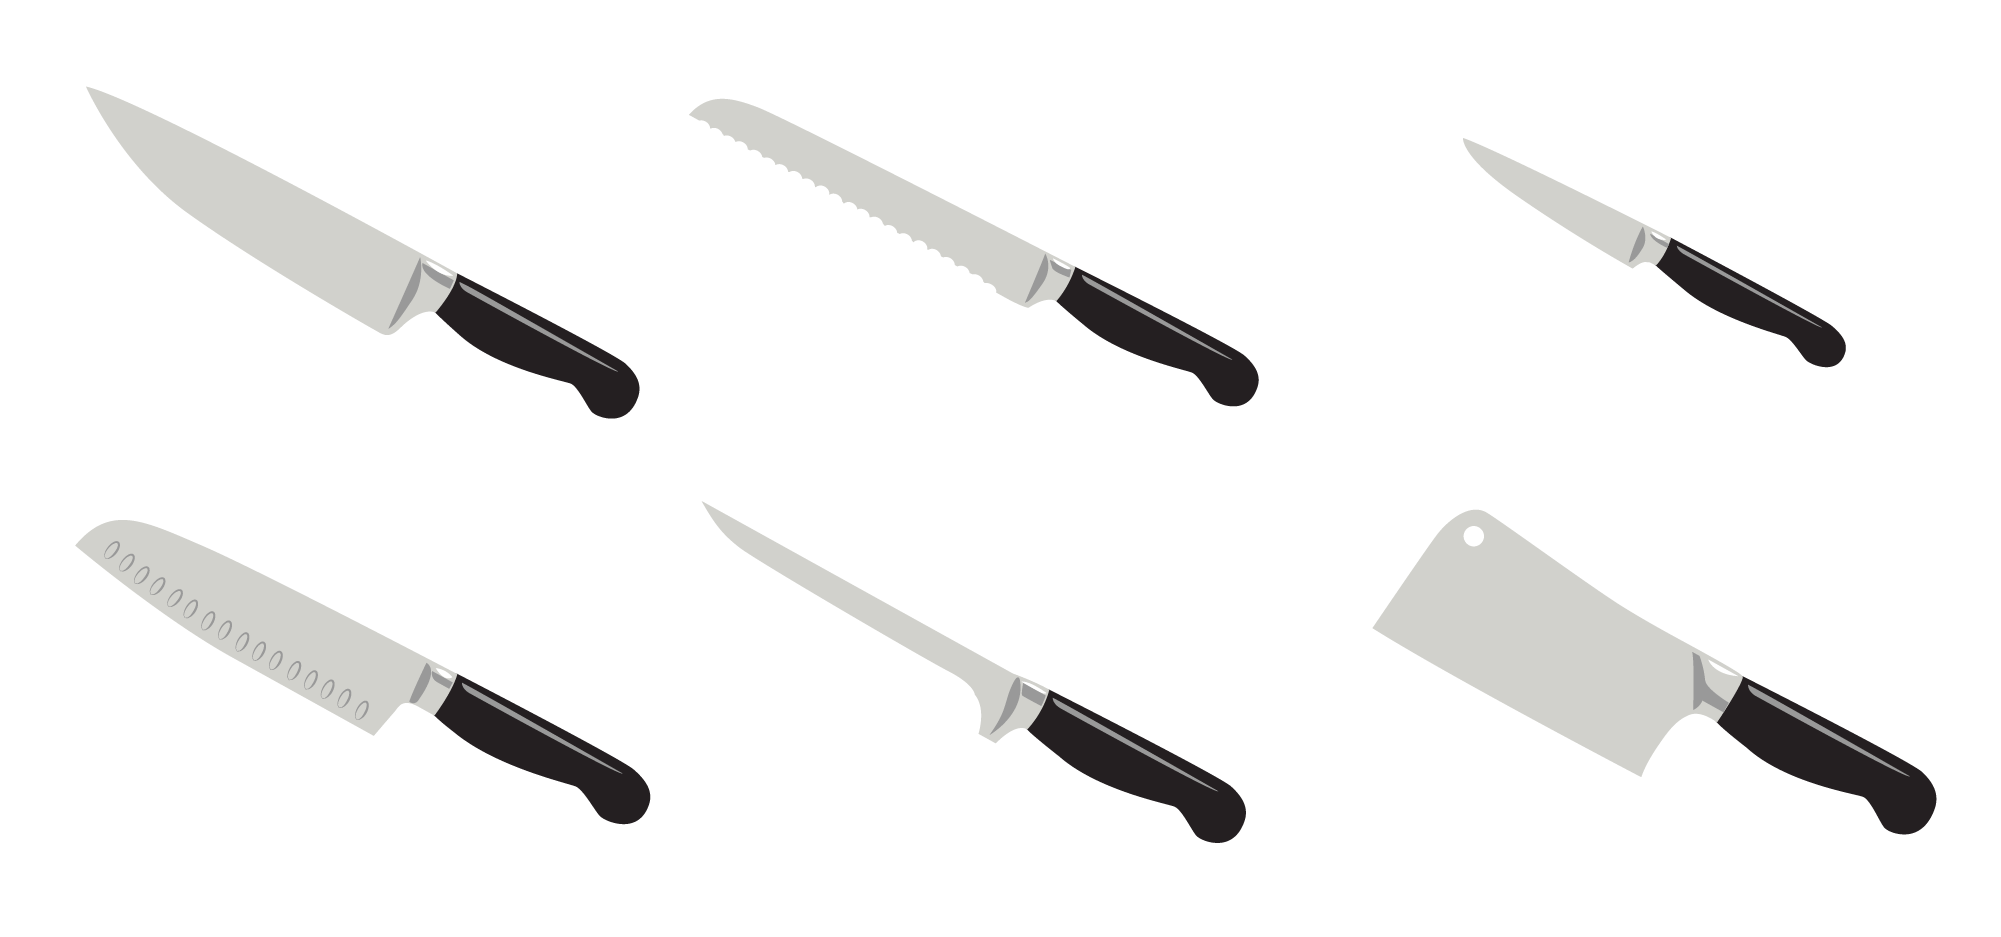 Knives illustration